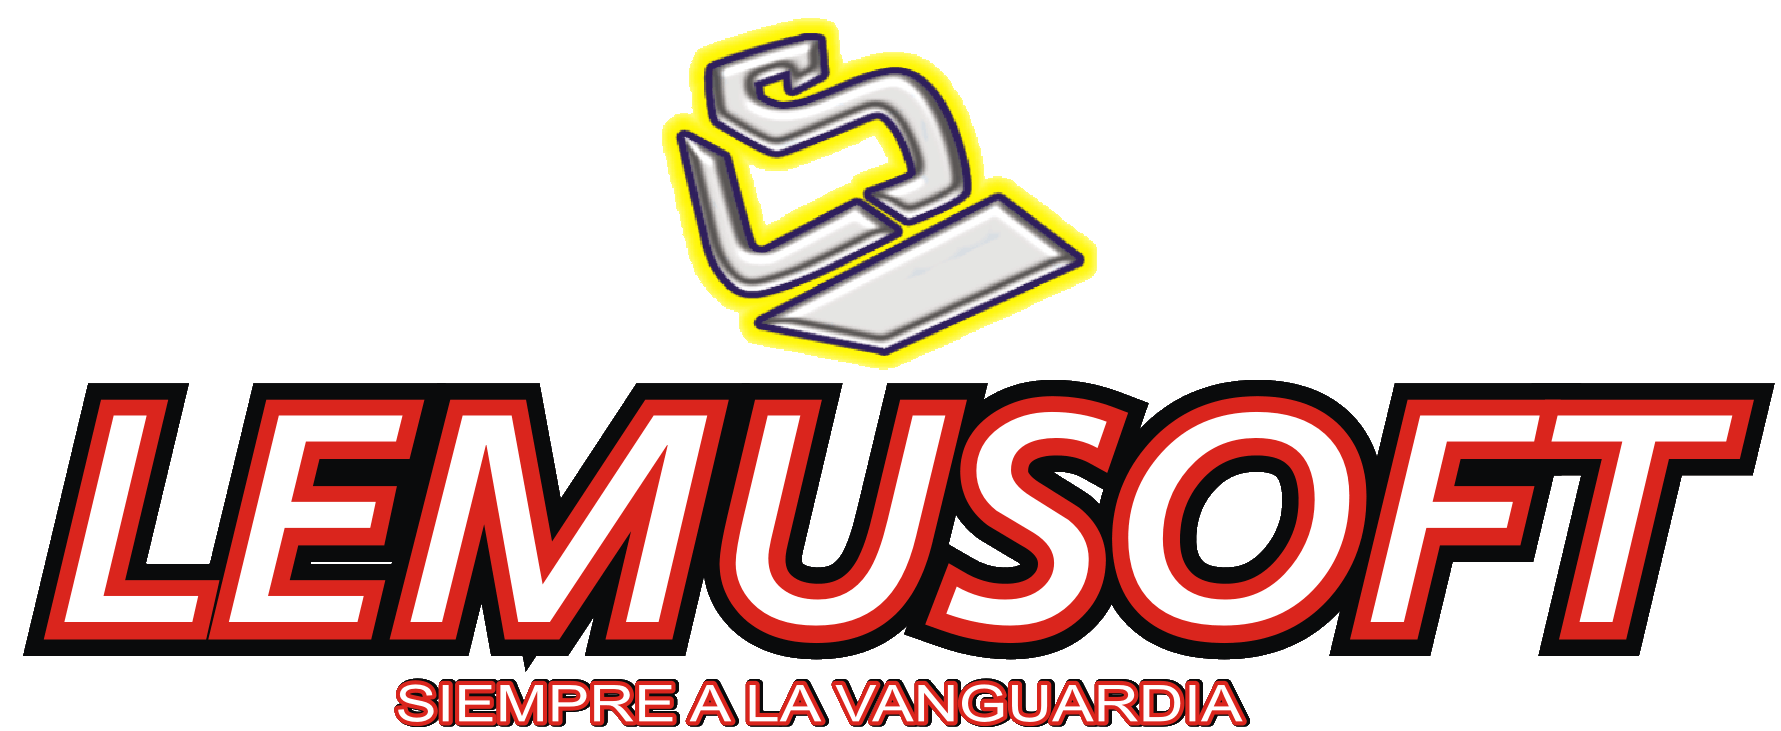 Lemusoft-Logo